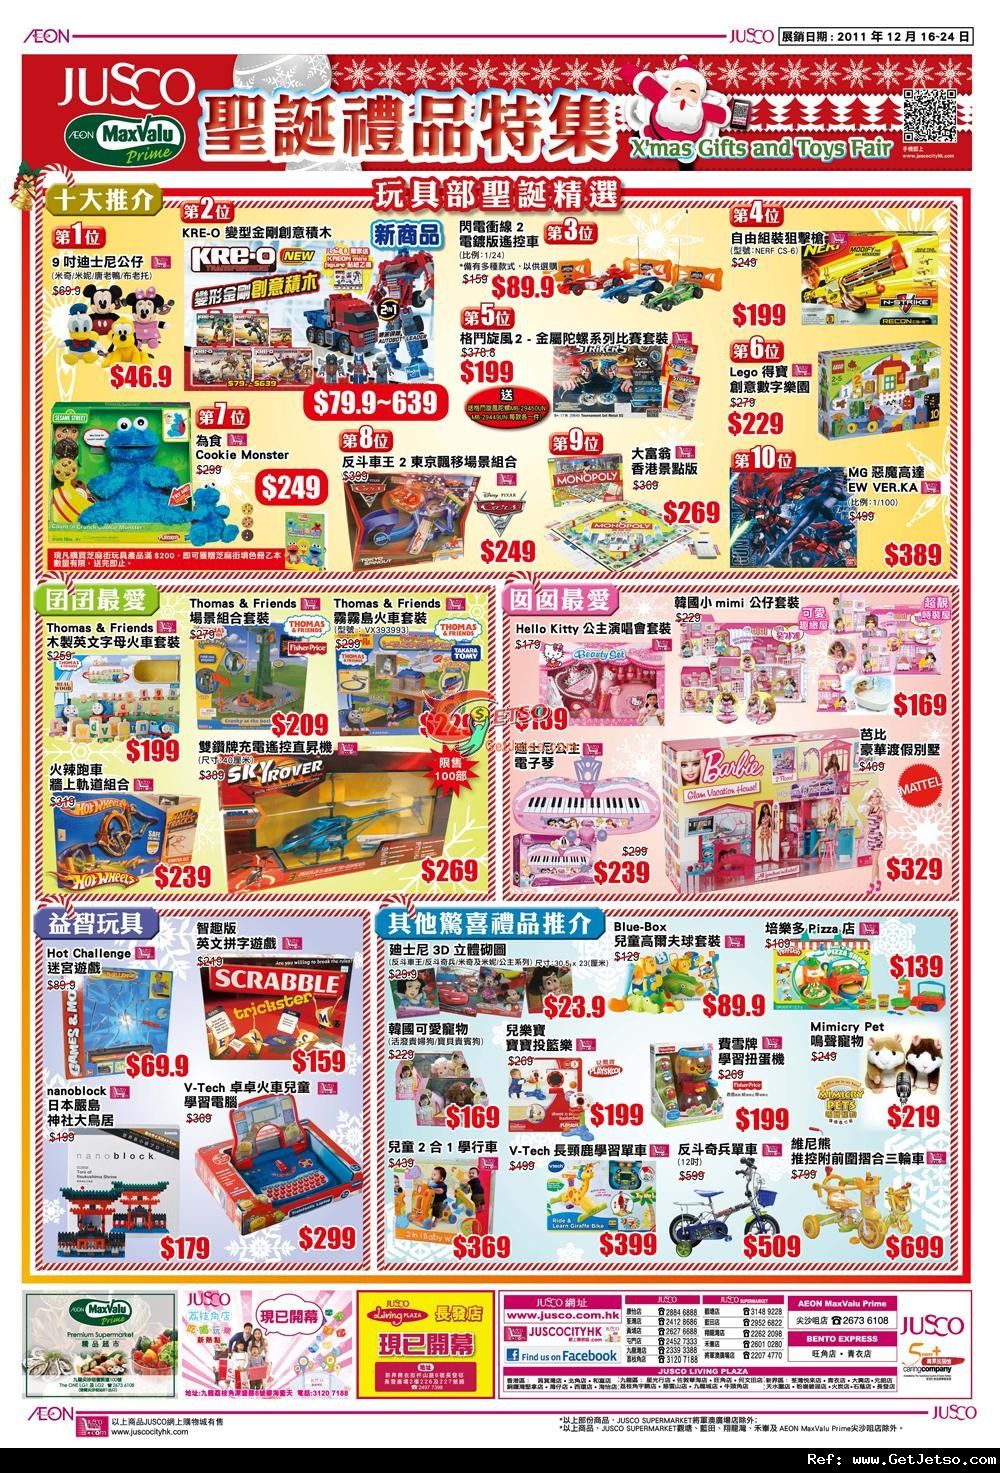 吉之島聖誕禮品及派對美食購買優惠(至11年12月24日)圖片1